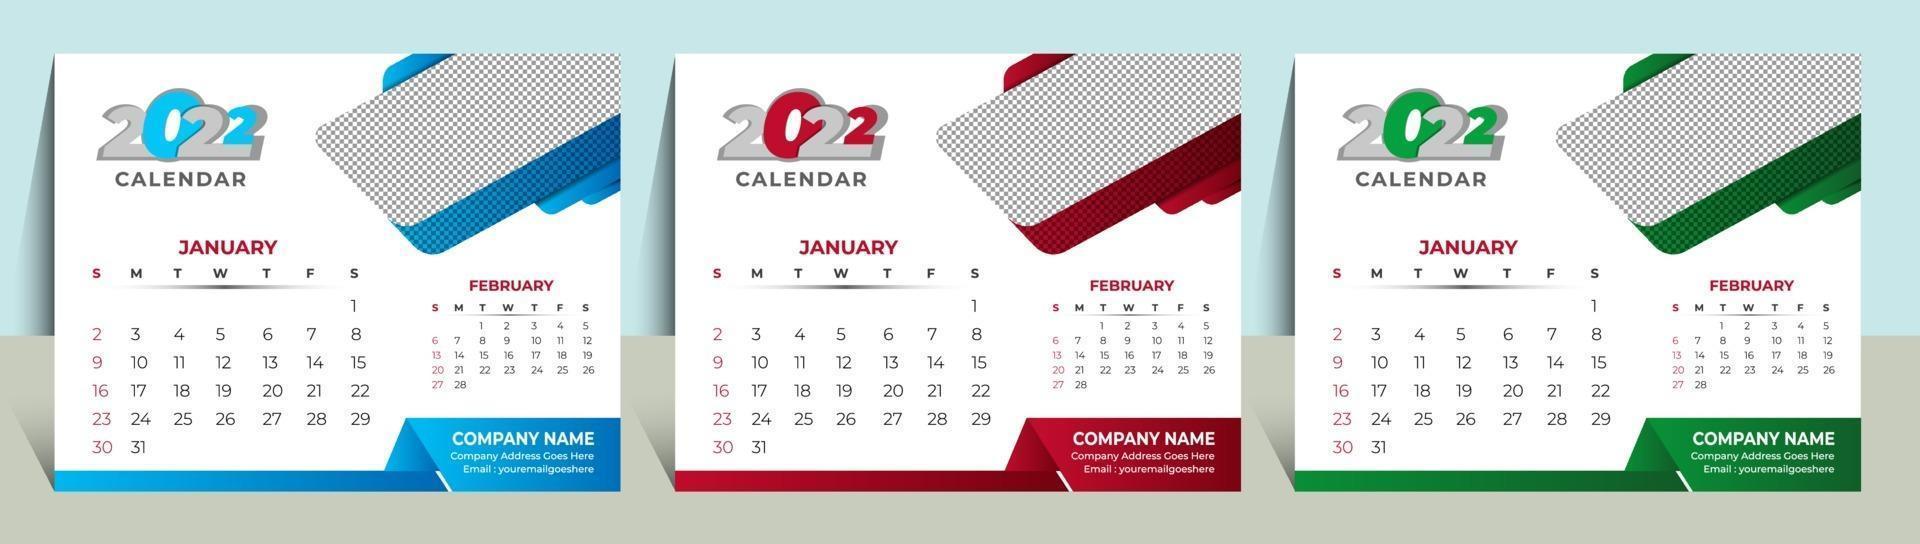 Modèle de calendrier 2022 Calendrier mural Conception de calendrier de bureau vectoriel 2022